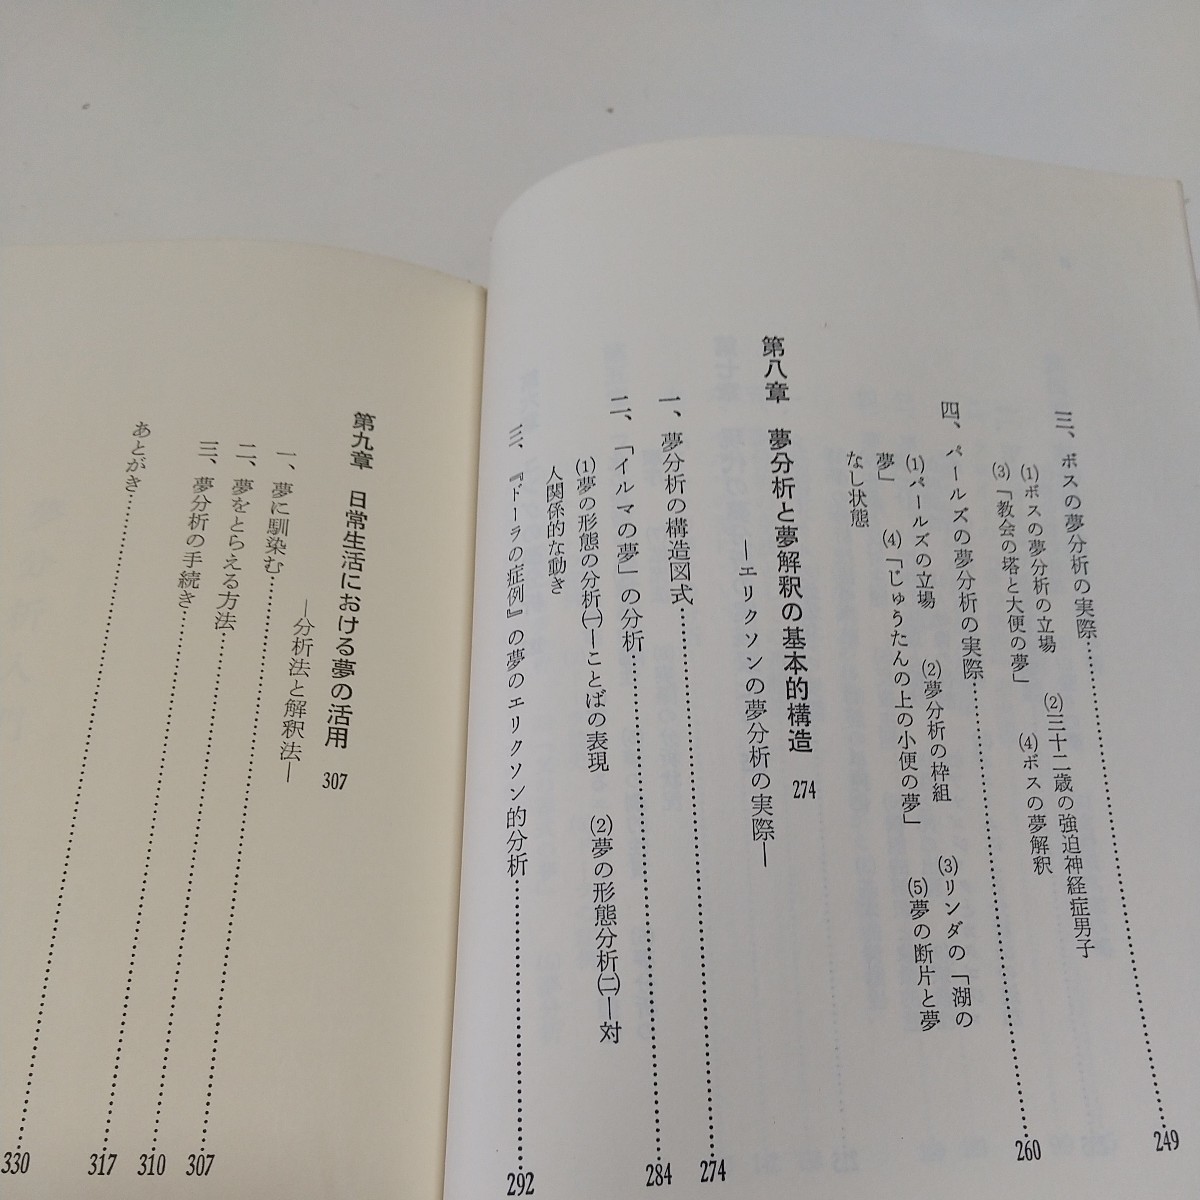 夢分析入門 鑪幹八郎 第1版 昭和58年発行 創元社 中古 心理学 02201F005